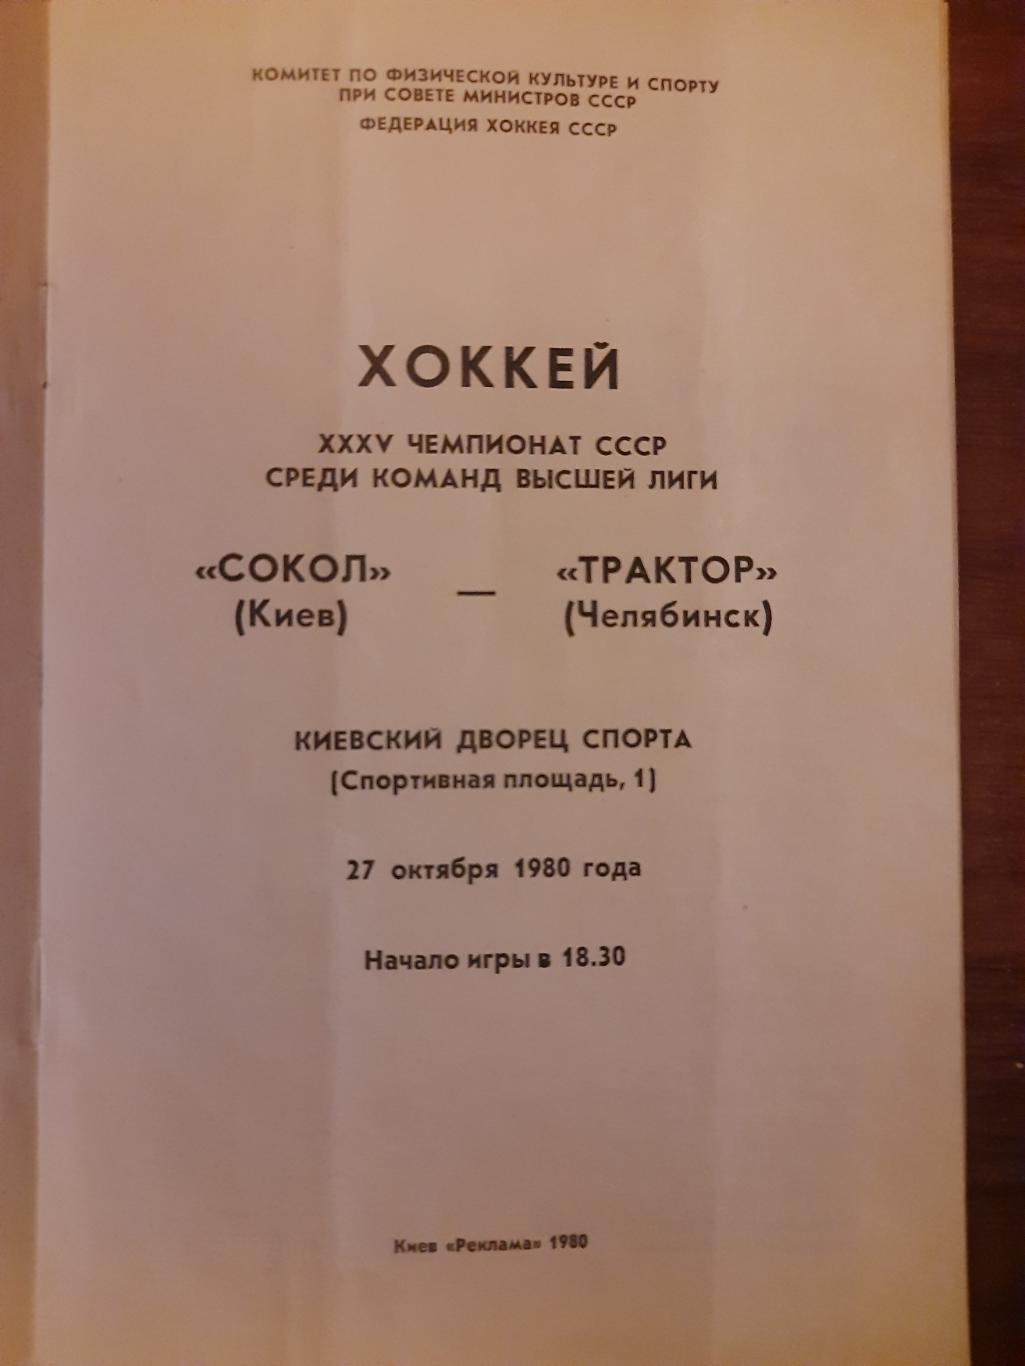 Сокол Киев - Трактор Челябинск 27.10.1980 1